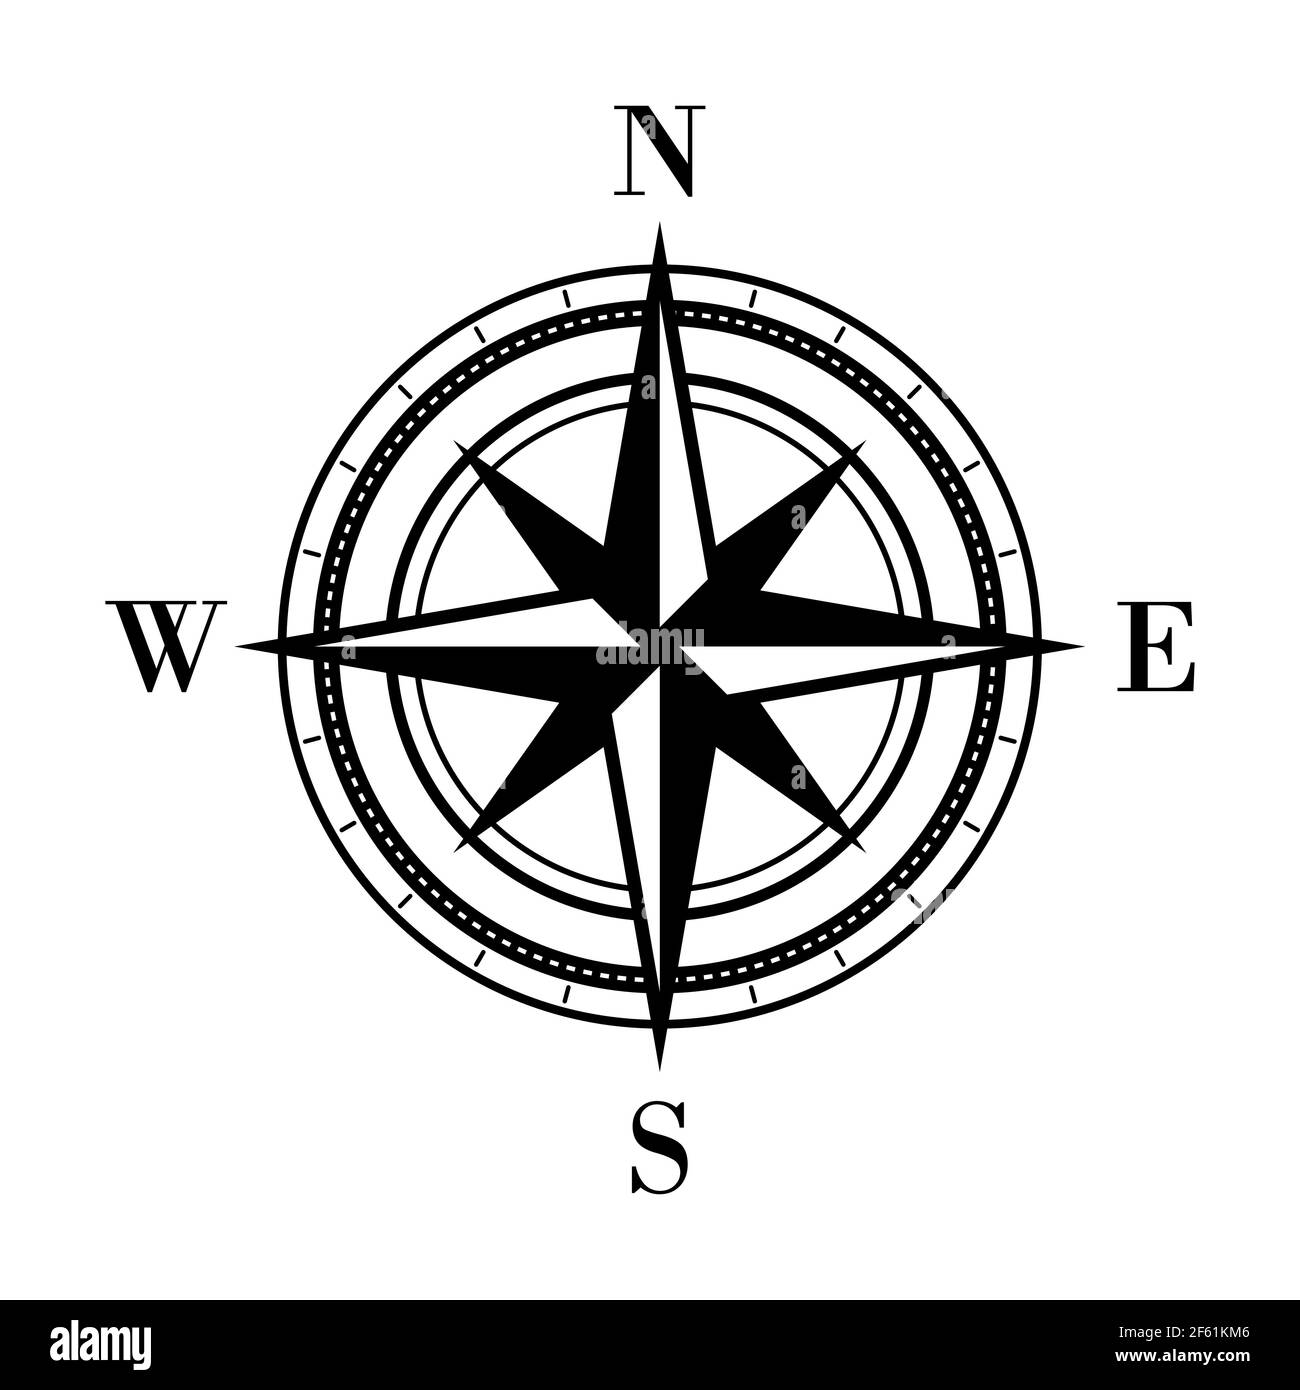 Kompasssymbol. Detaillierter Kompass mit Richtungen. Norden, Süden, Westen,  Osten mit Pfeilen gekennzeichnet. Navigationskonzept. Geografisches  grafisches Element Stock-Vektorgrafik - Alamy